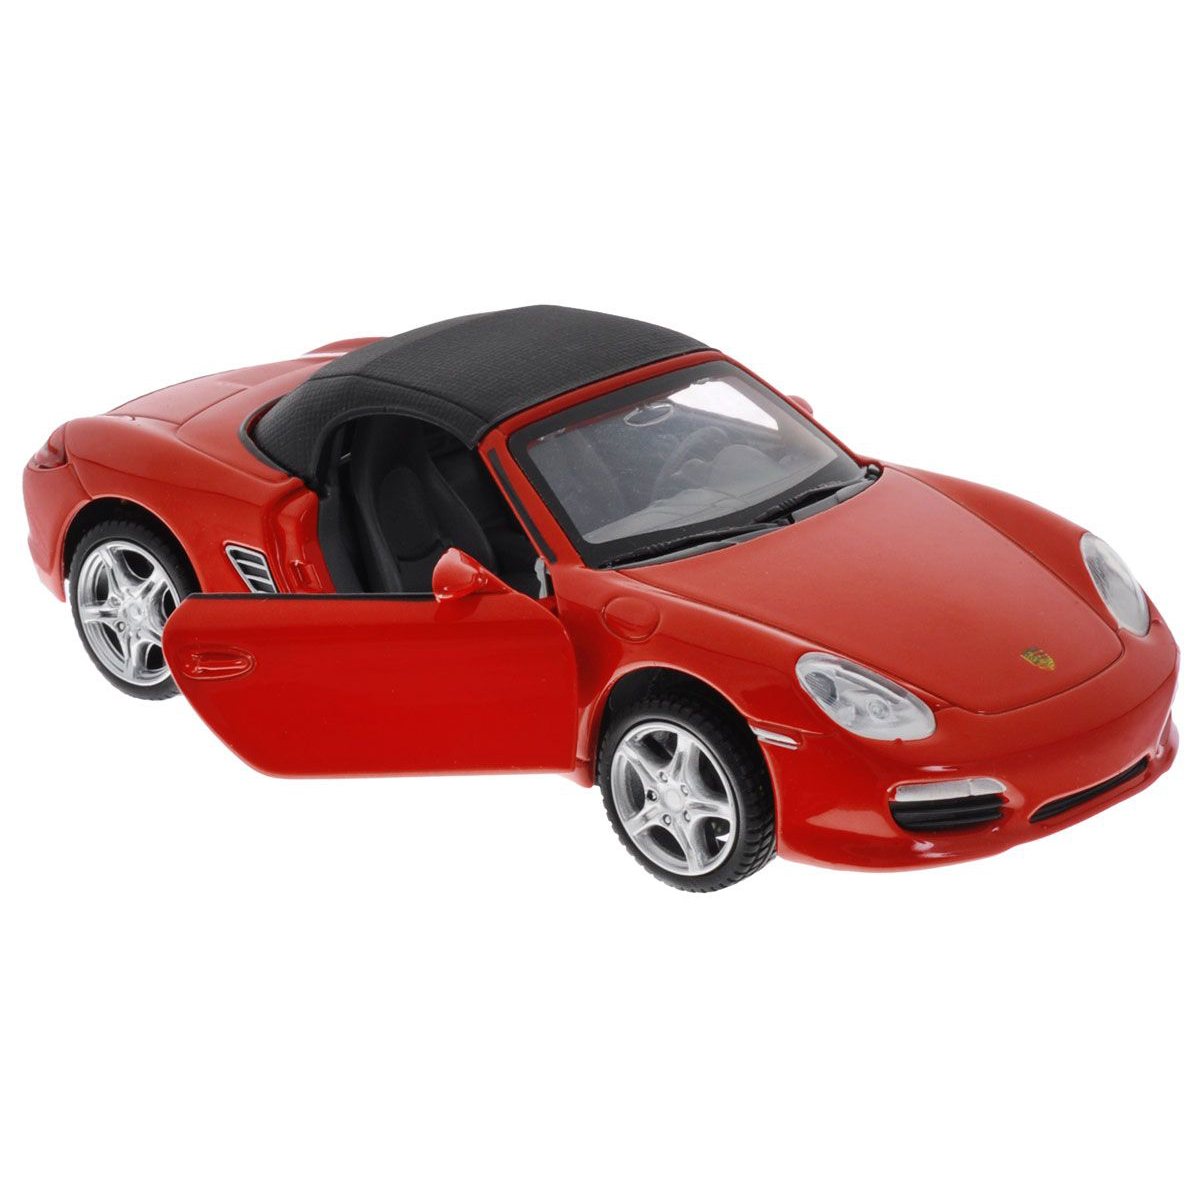 Машинки вб. Машина "Porsche Boxster s" Kinsmart,. Порше Бокстер 1 32 Велли. Машинка Porsche Boxter Spider 1:32. Porsche Boxster игрушка.